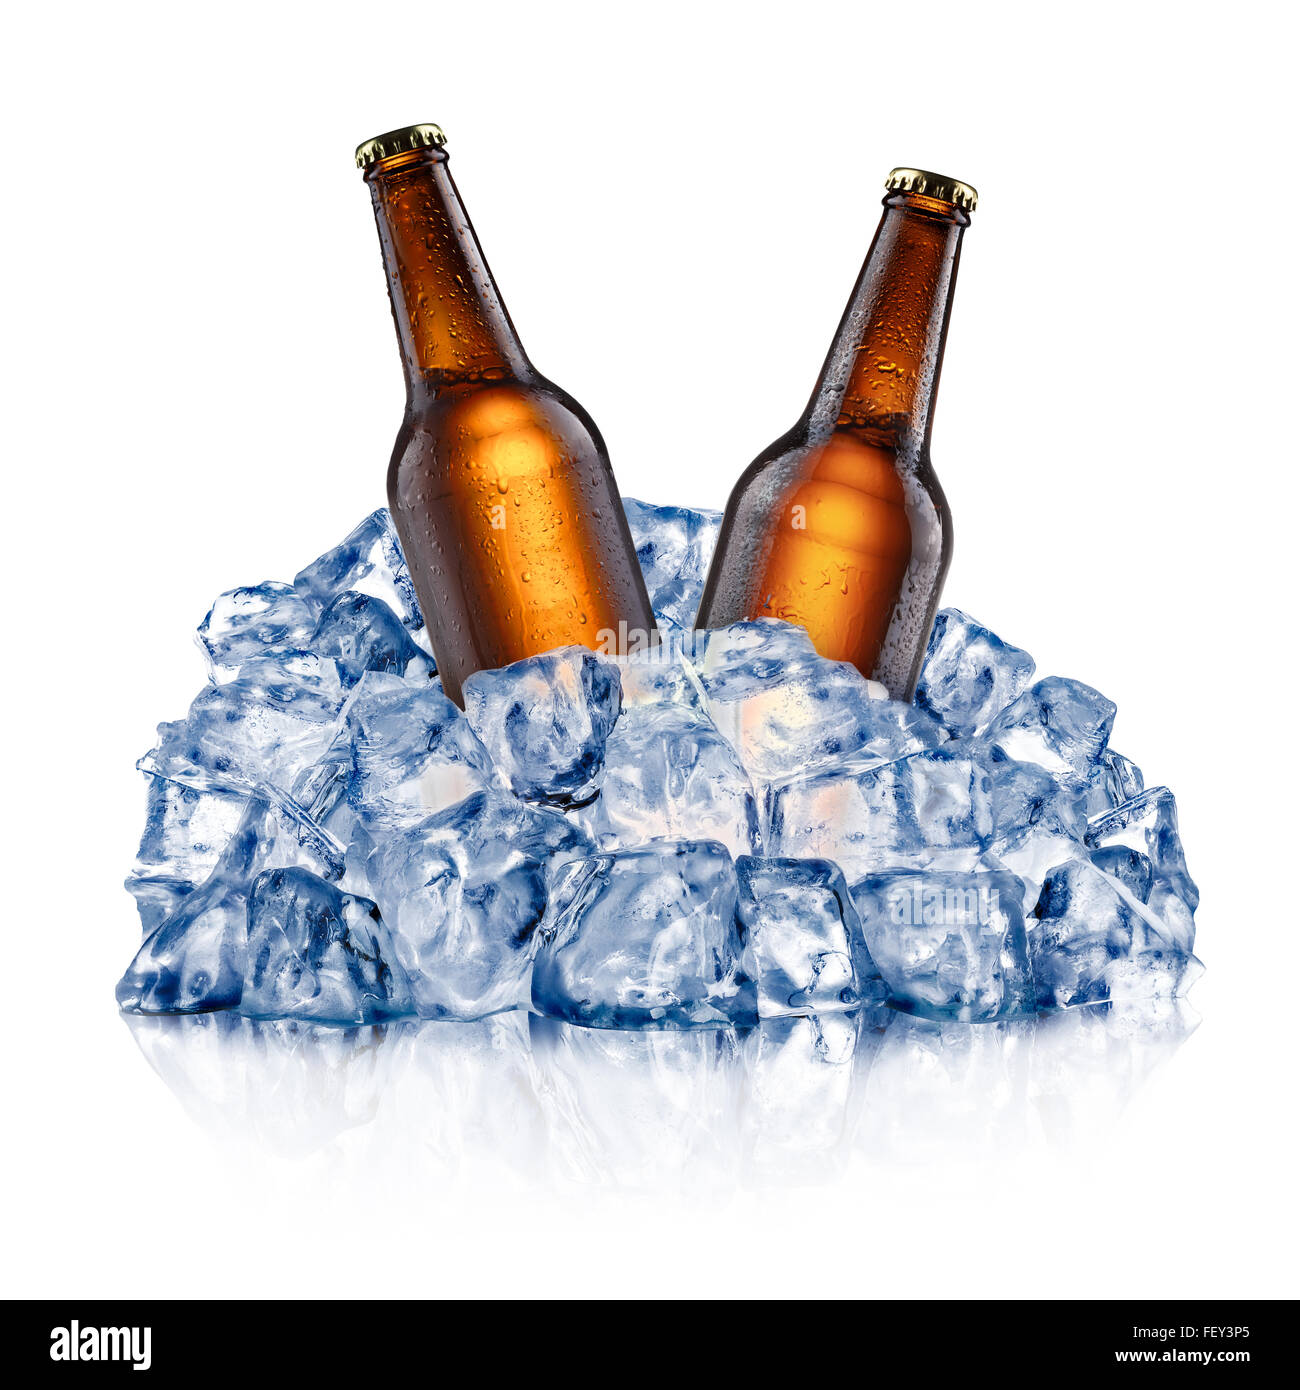 Zwei braune Bierflaschen, in eine grobe zerstoßenes Eis abkühlen. Beschneidungspfade Stockfoto